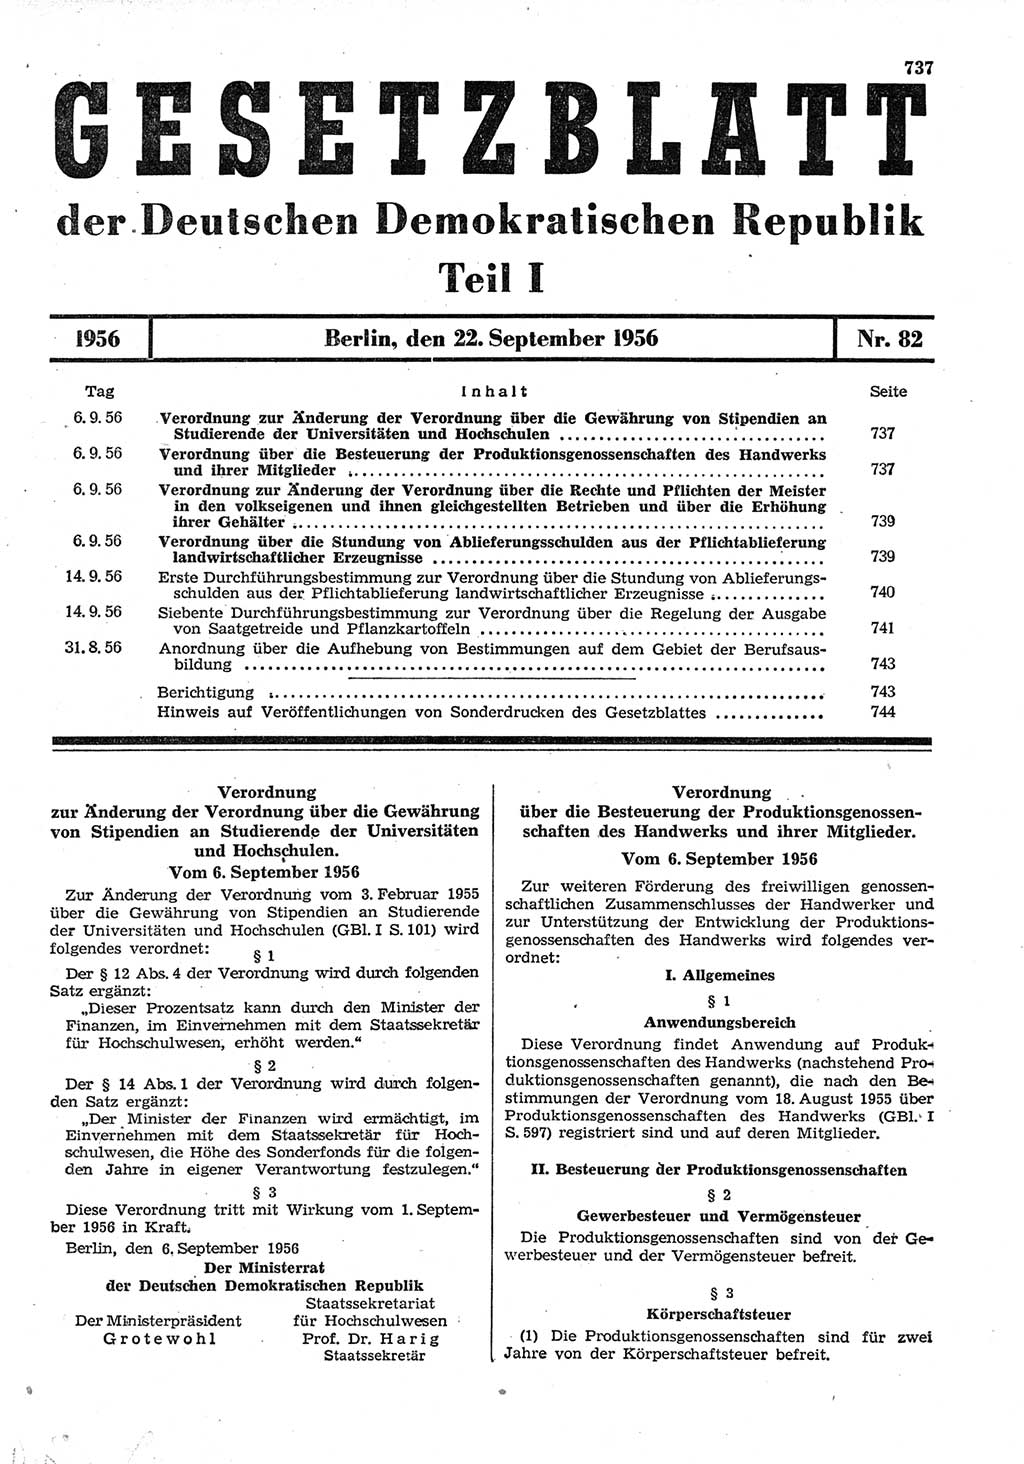 Gesetzblatt (GBl.) der Deutschen Demokratischen Republik (DDR) Teil Ⅰ 1956, Seite 737 (GBl. DDR Ⅰ 1956, S. 737)